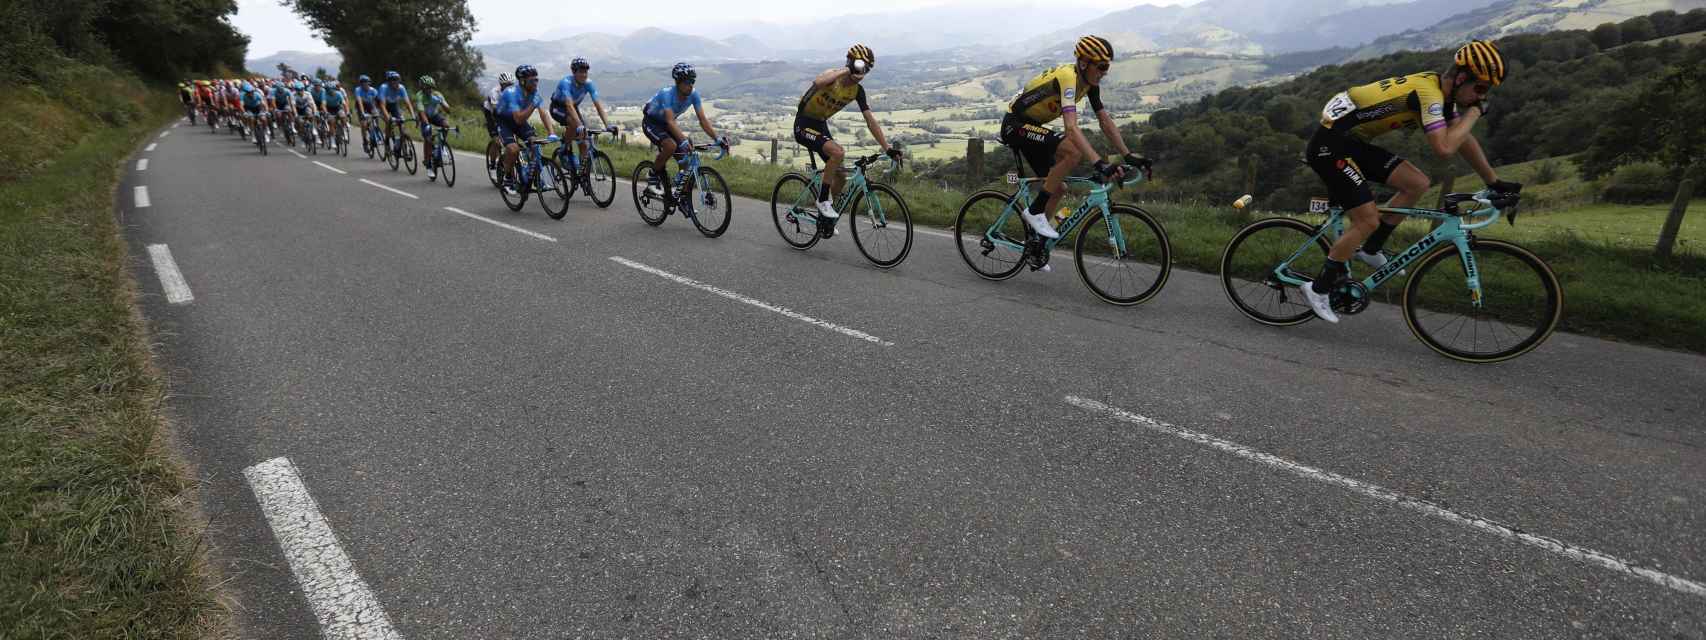 La Vuelta a España 2019